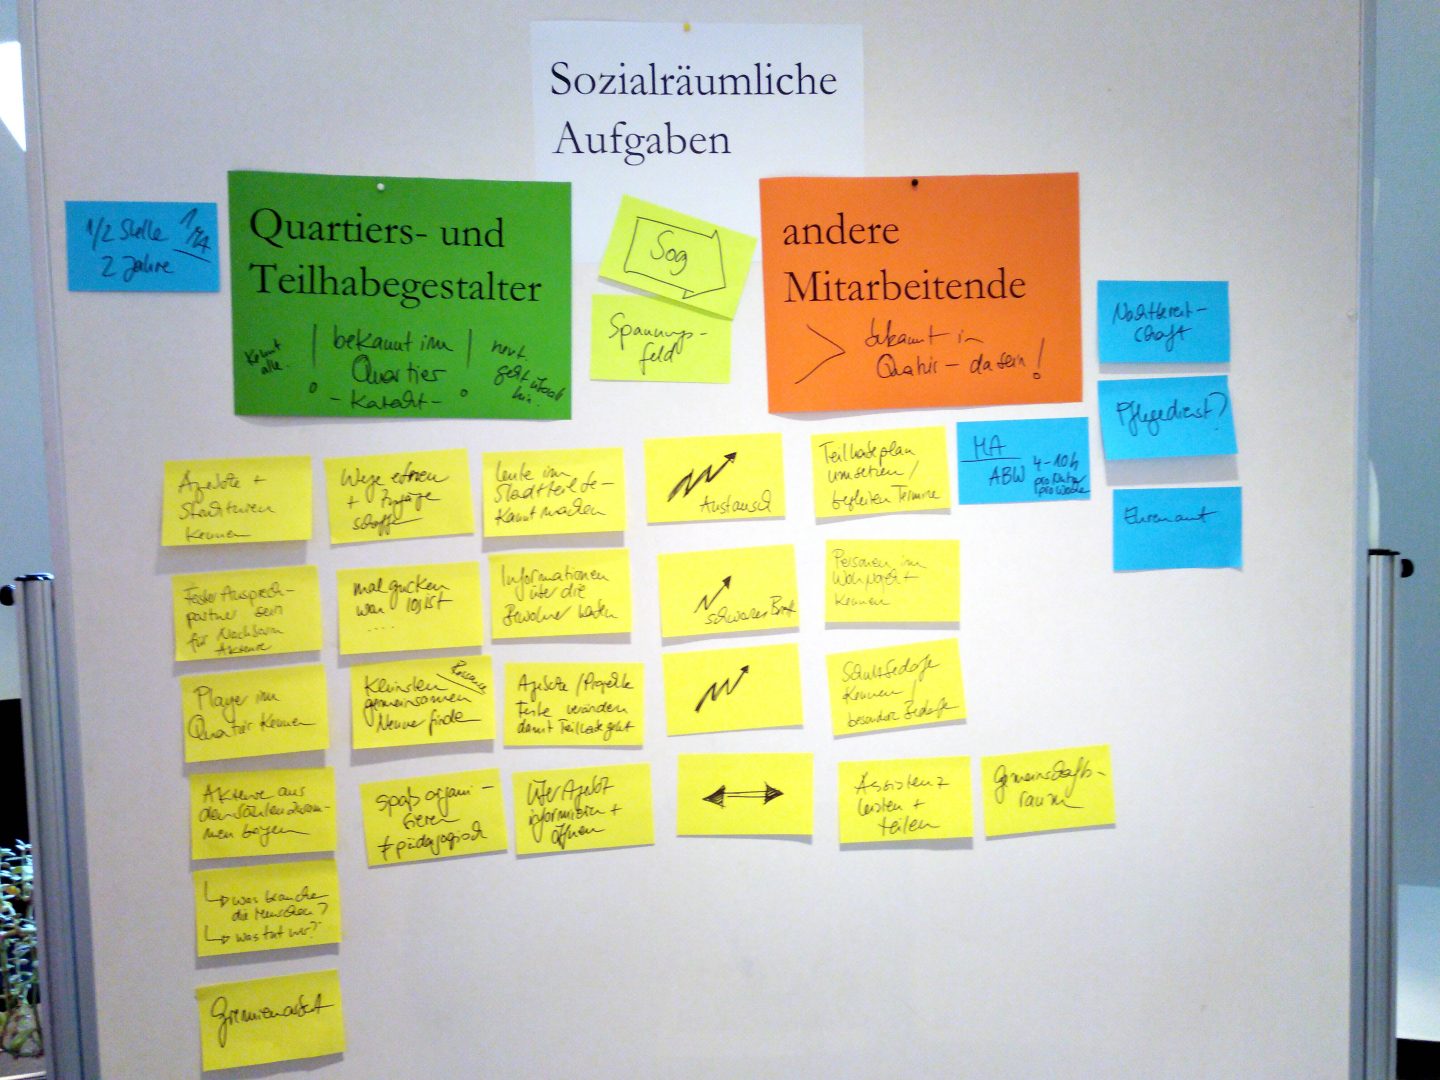 Foto eines Flipcharts mit bunten, beschrifteten Ergebniskarten unter der Überschrift "Sozialräumliche Aufgaben".